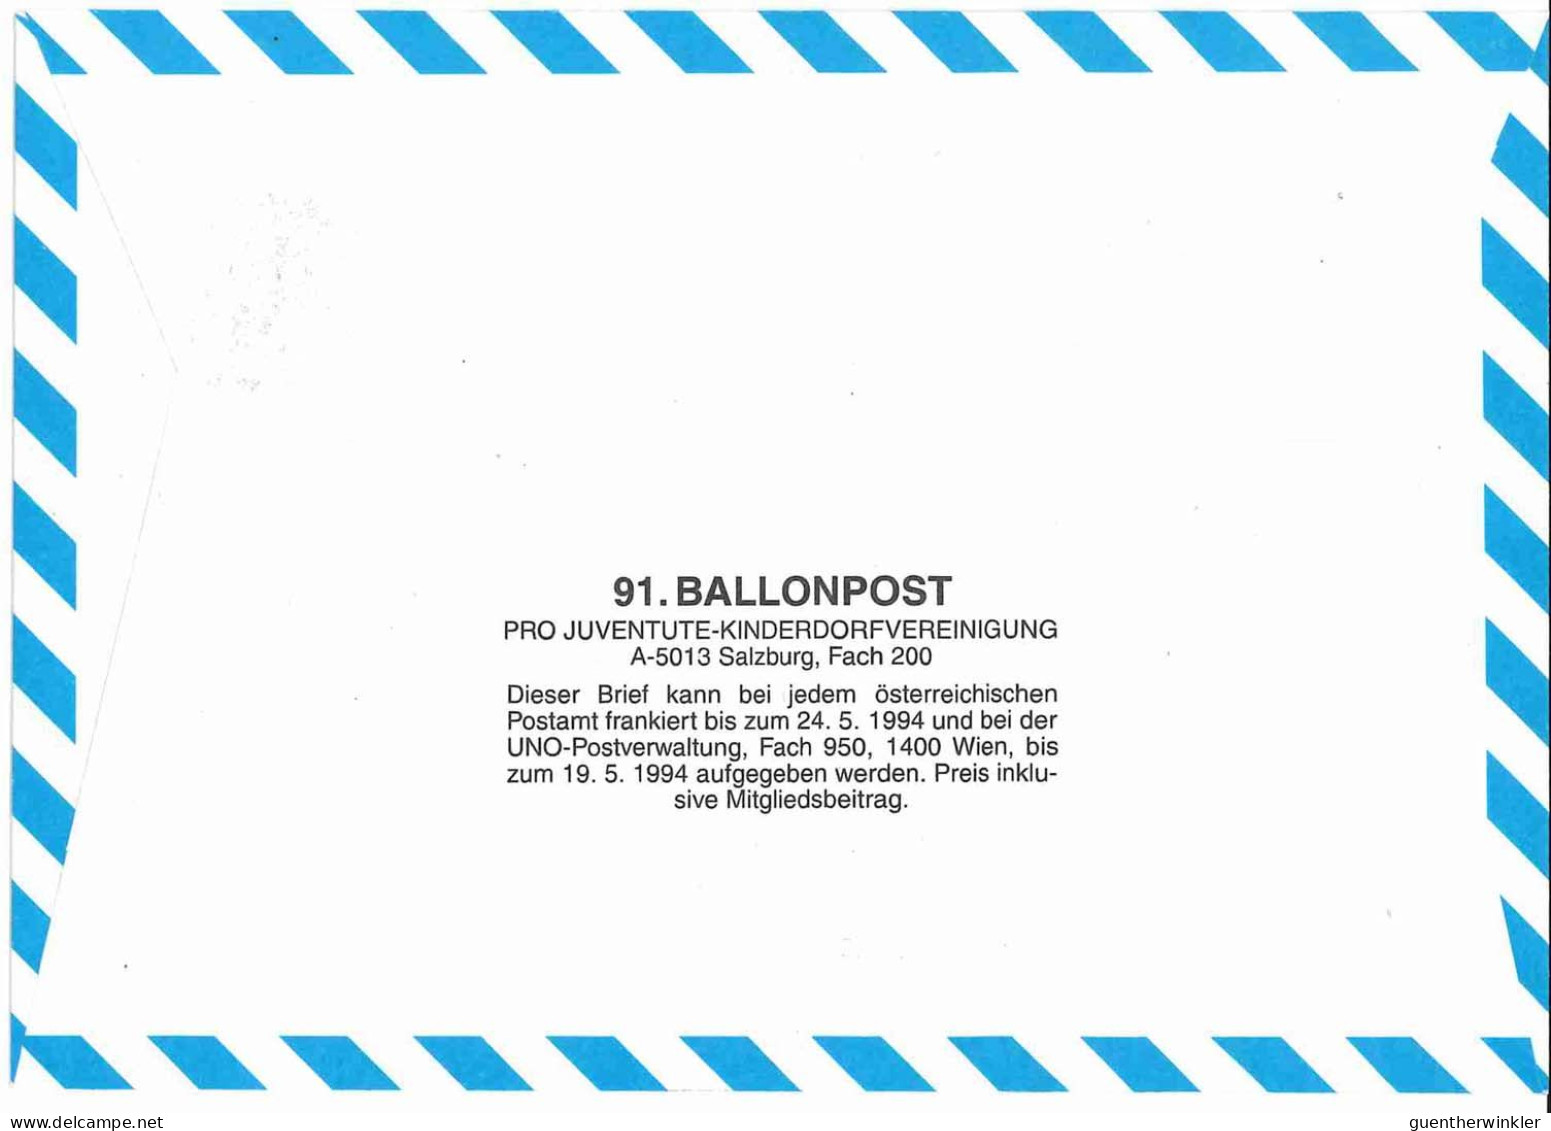 Regulärer Ballonpostflug Nr. 91a Der Pro Juventute [RBP91a] - Par Ballon